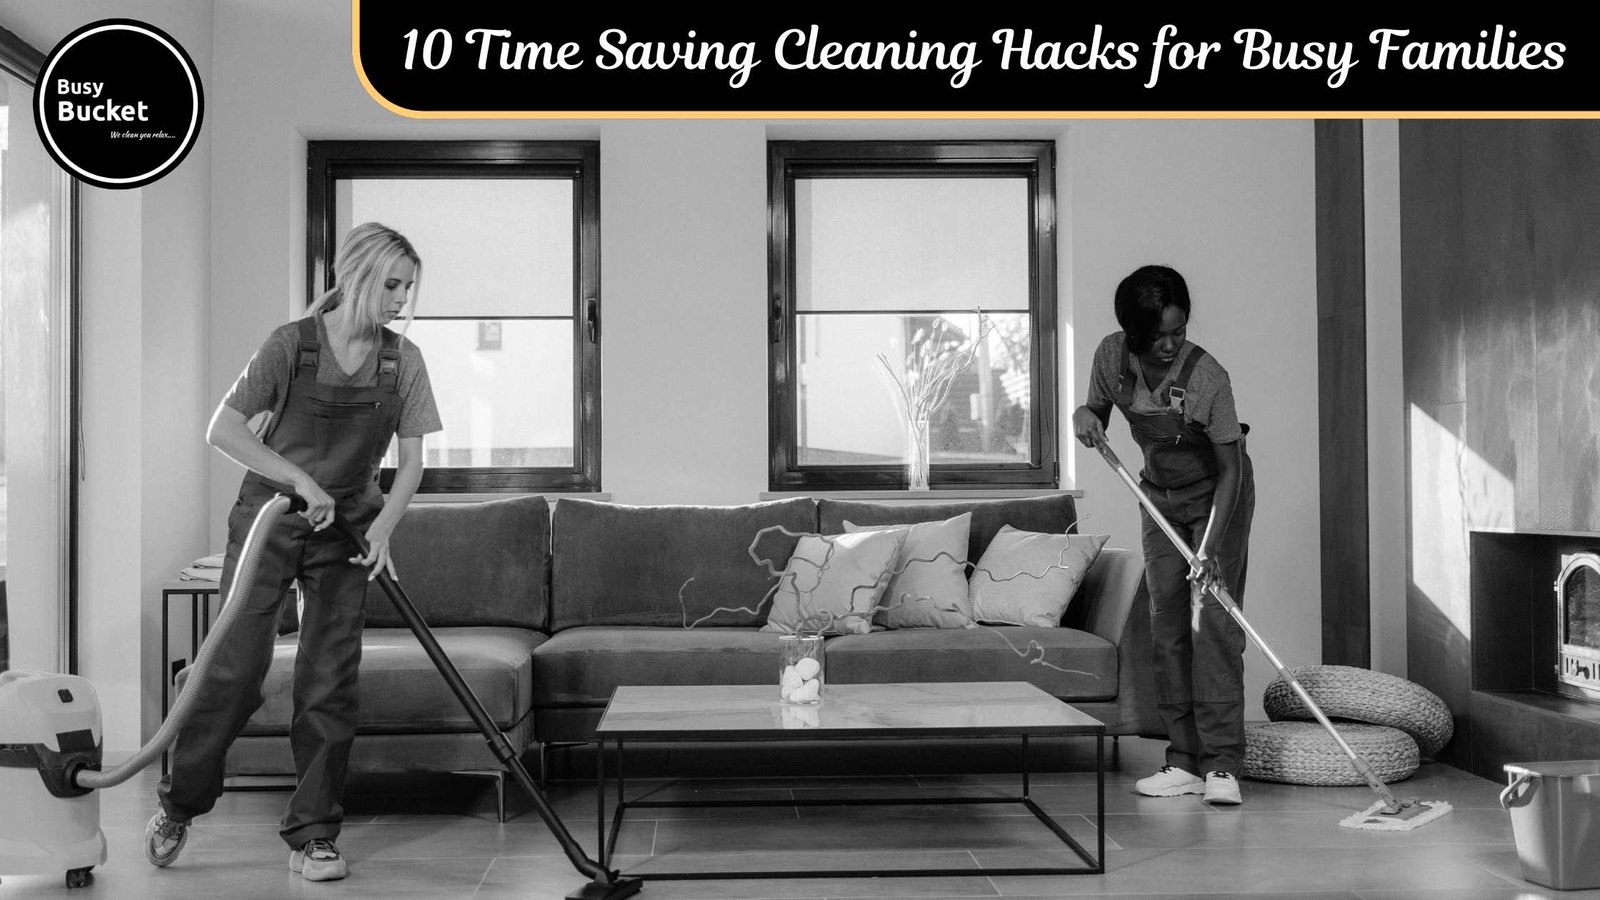 Time Saving Cleaning Hacks